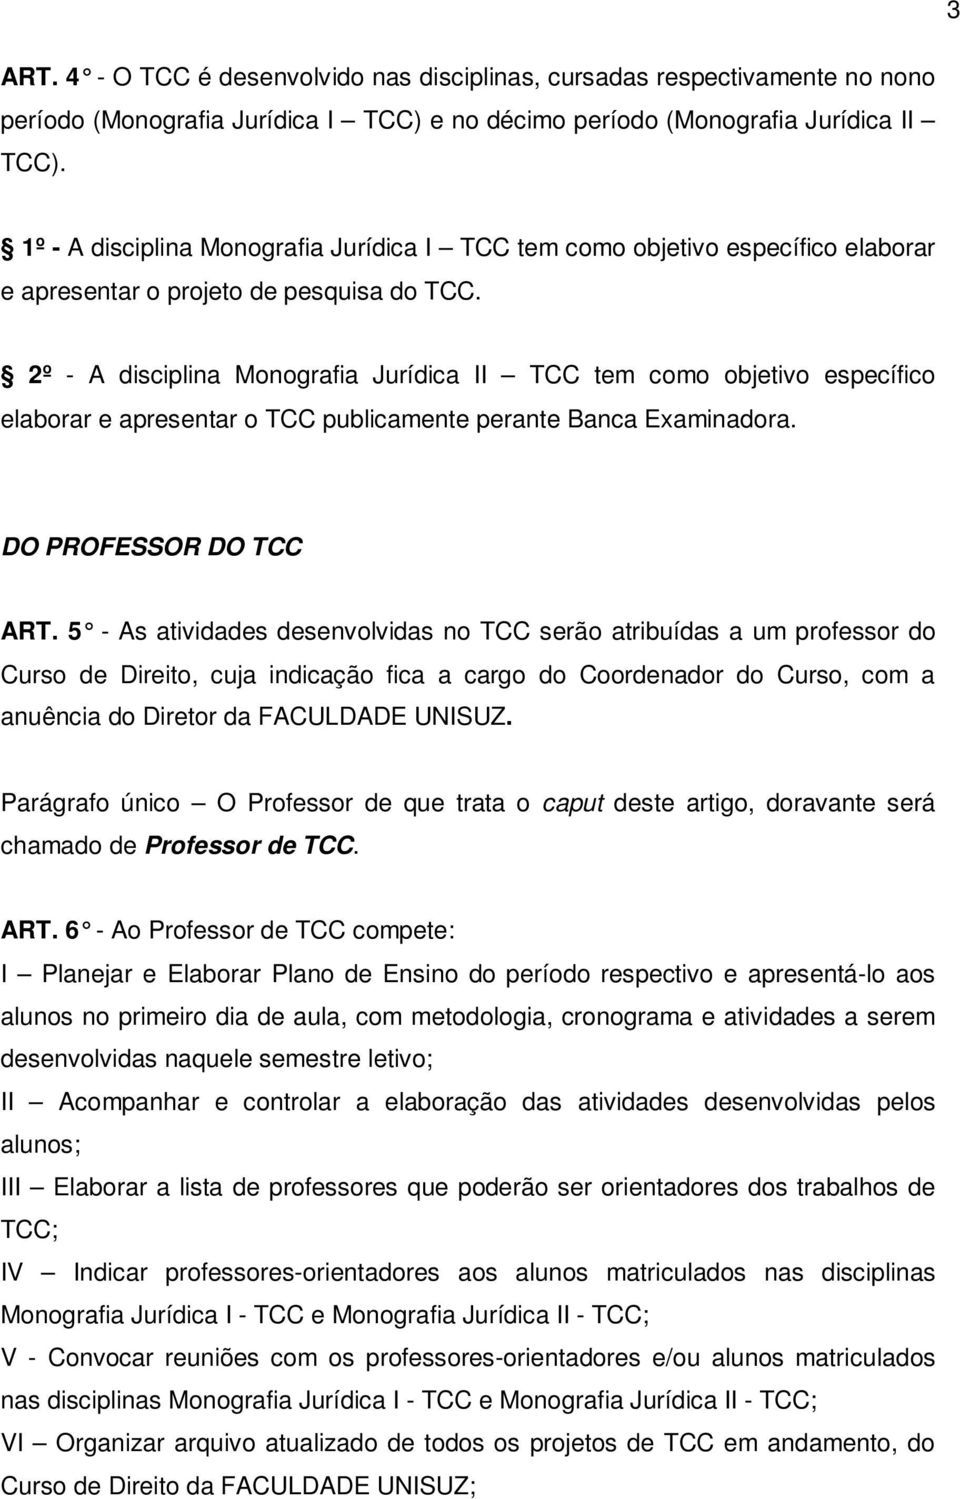 2º - A disciplina Monografia Jurídica II TCC tem como objetivo específico elaborar e apresentar o TCC publicamente perante Banca Examinadora. DO PROFESSOR DO TCC ART.